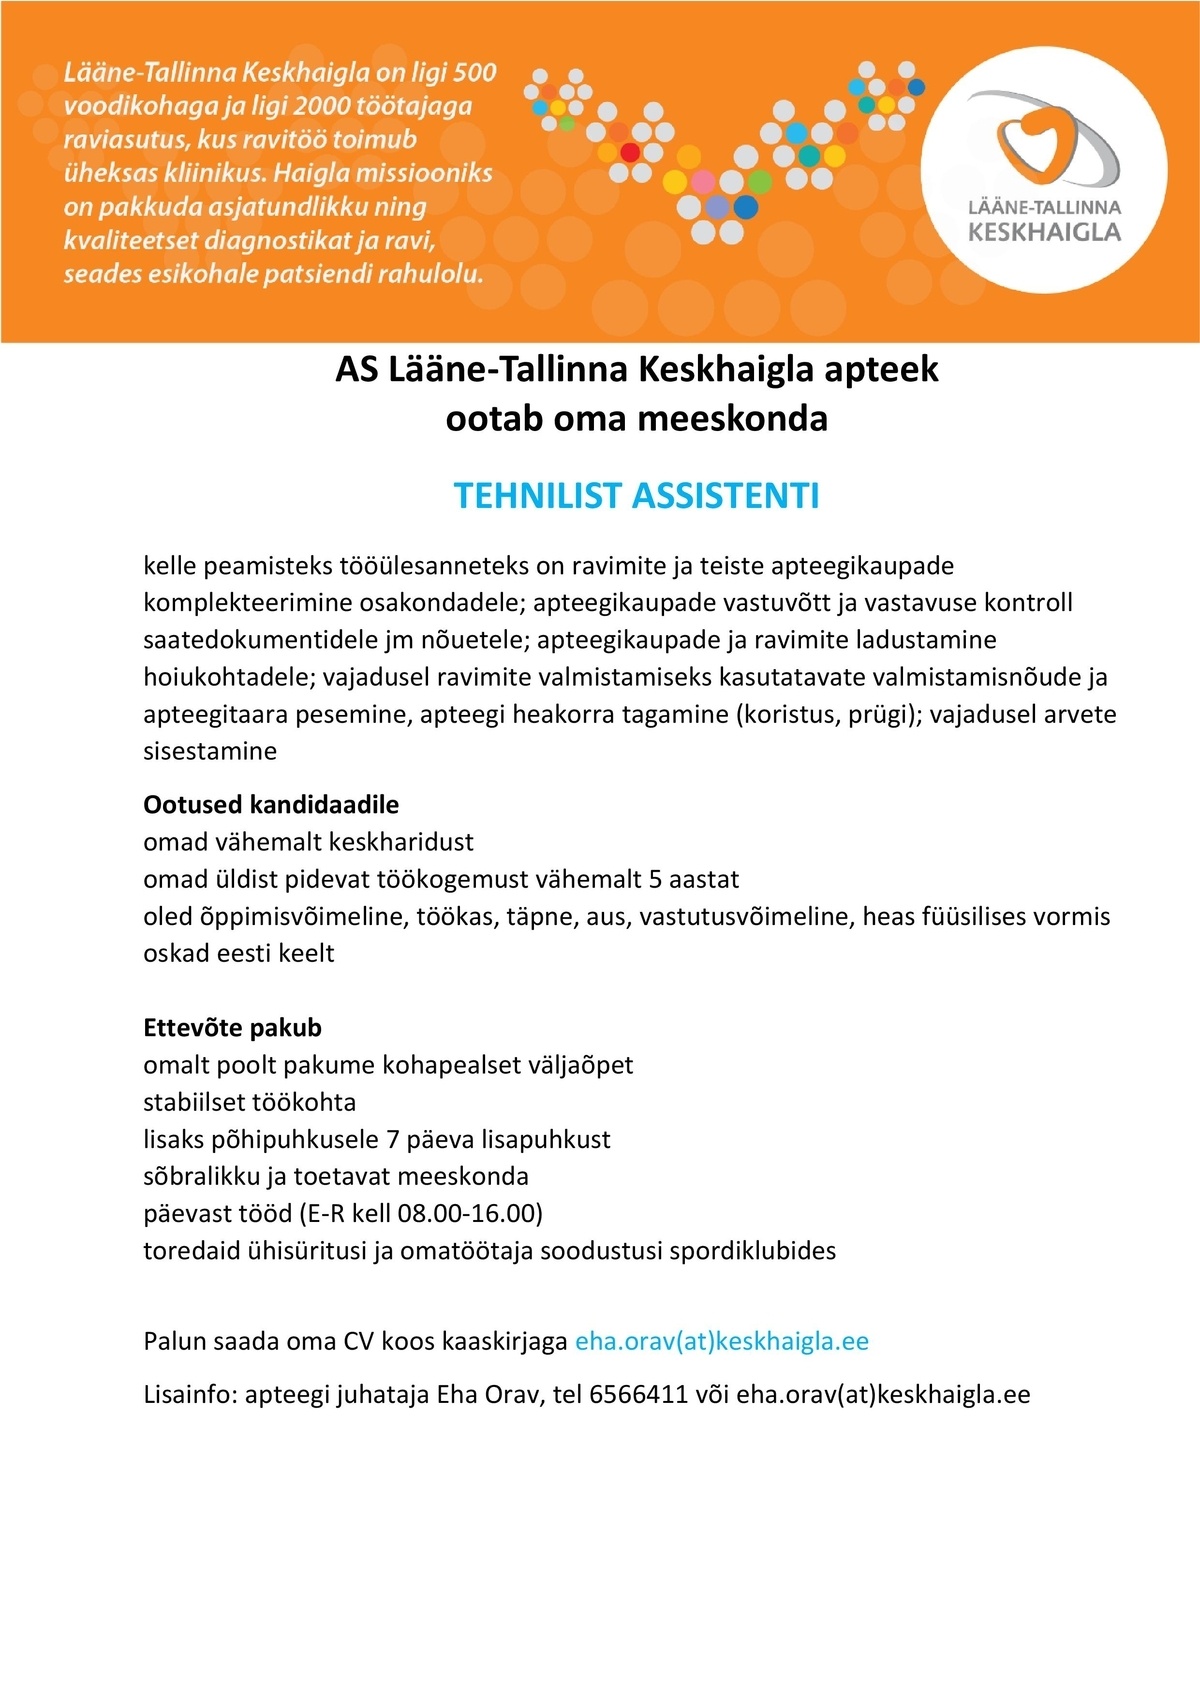 Lääne-Tallinna Keskhaigla AS Tehniline assistent (haigla apteeki)